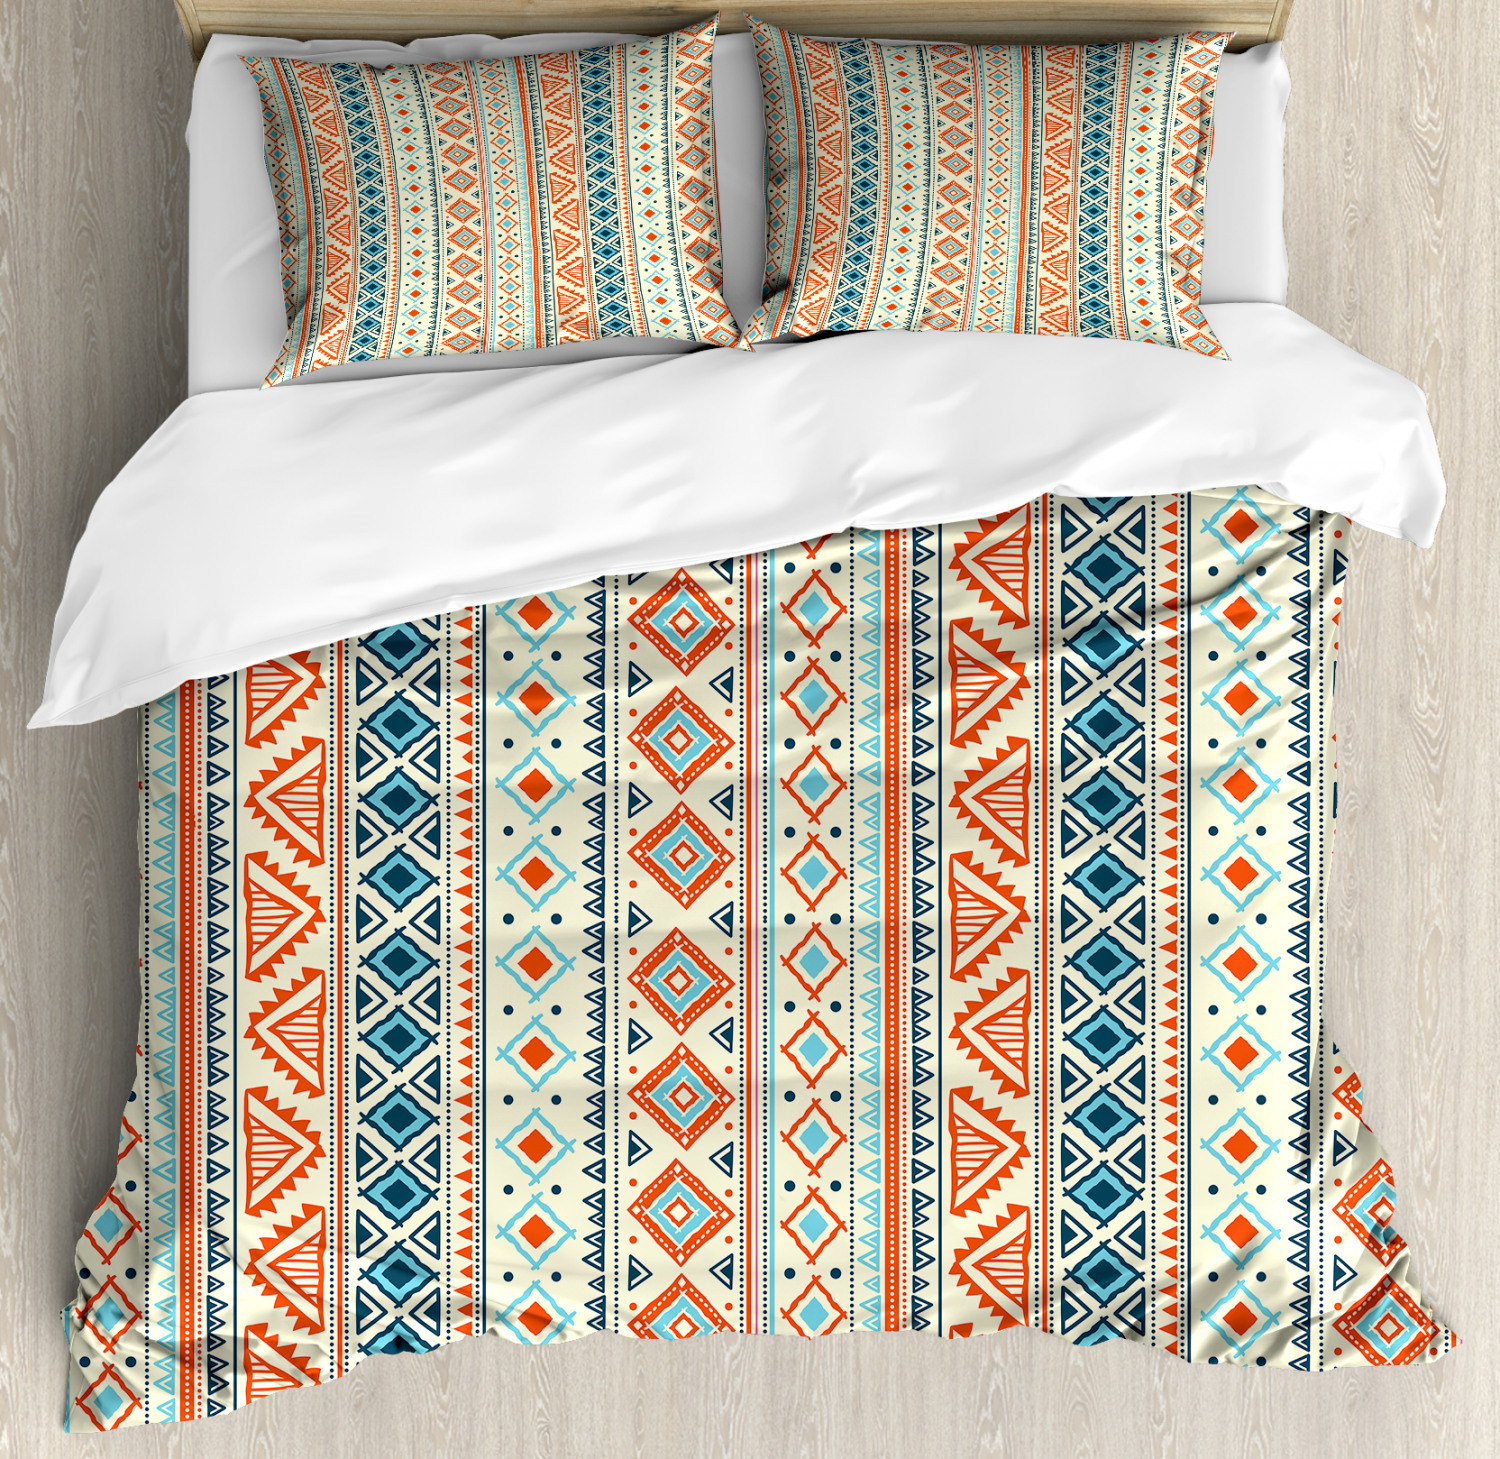 Tribal Duvet Cover Set With Pillow, Tribal Pattern Duvet Cover